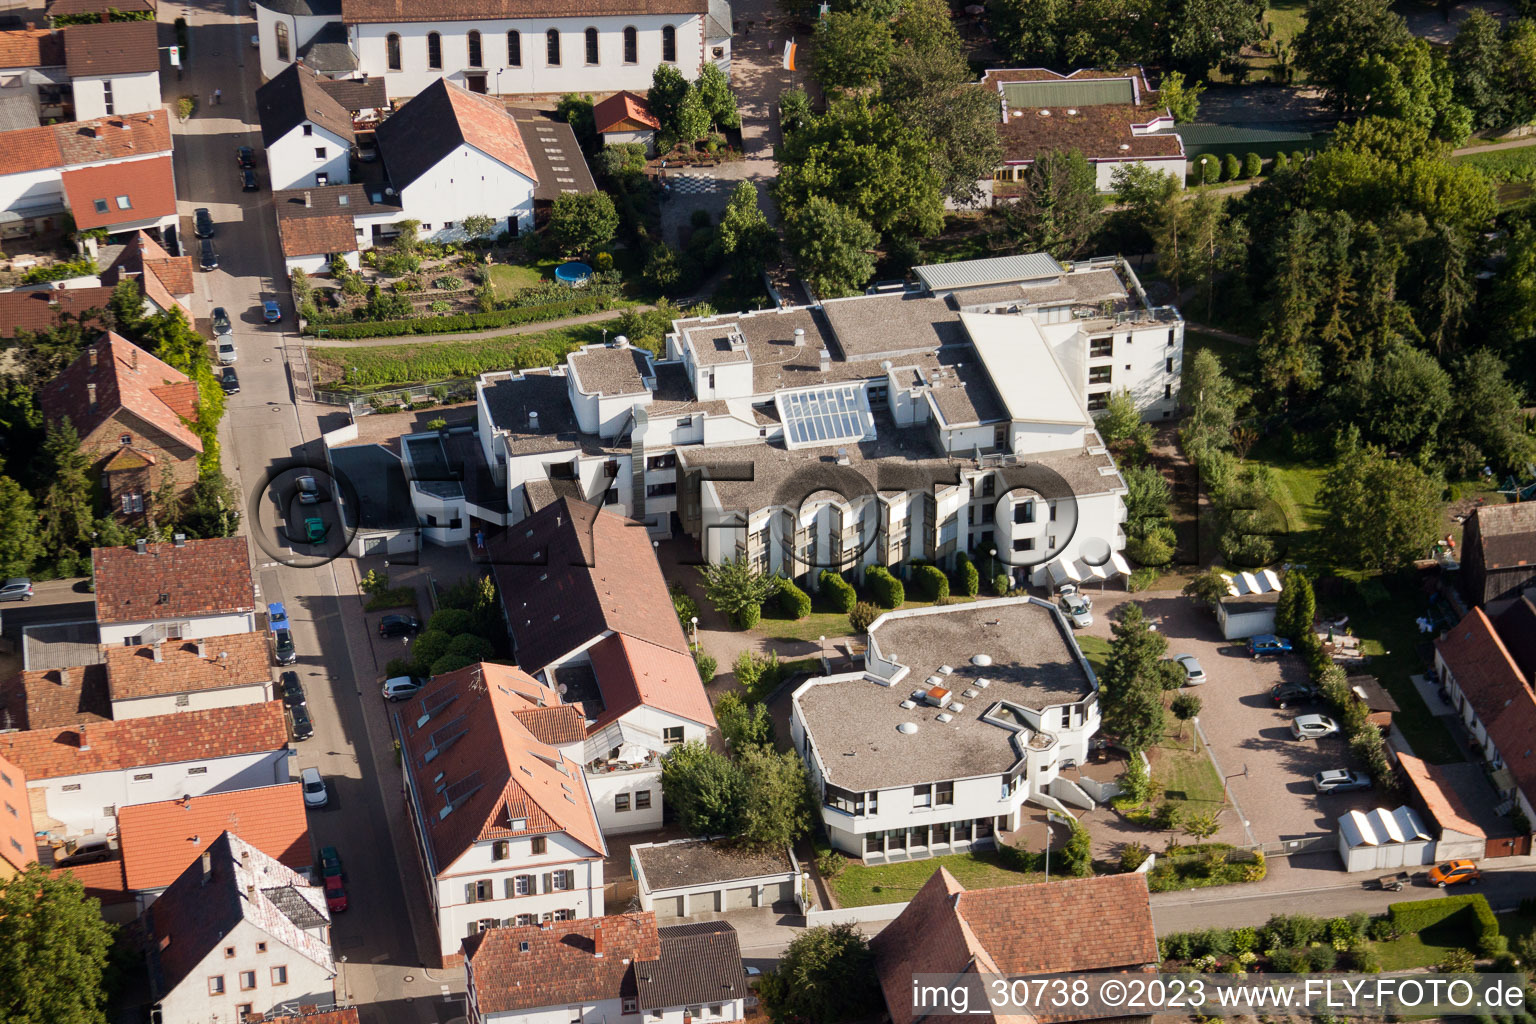 Vue aérienne de Fondation Braun à Rülzheim dans le département Rhénanie-Palatinat, Allemagne